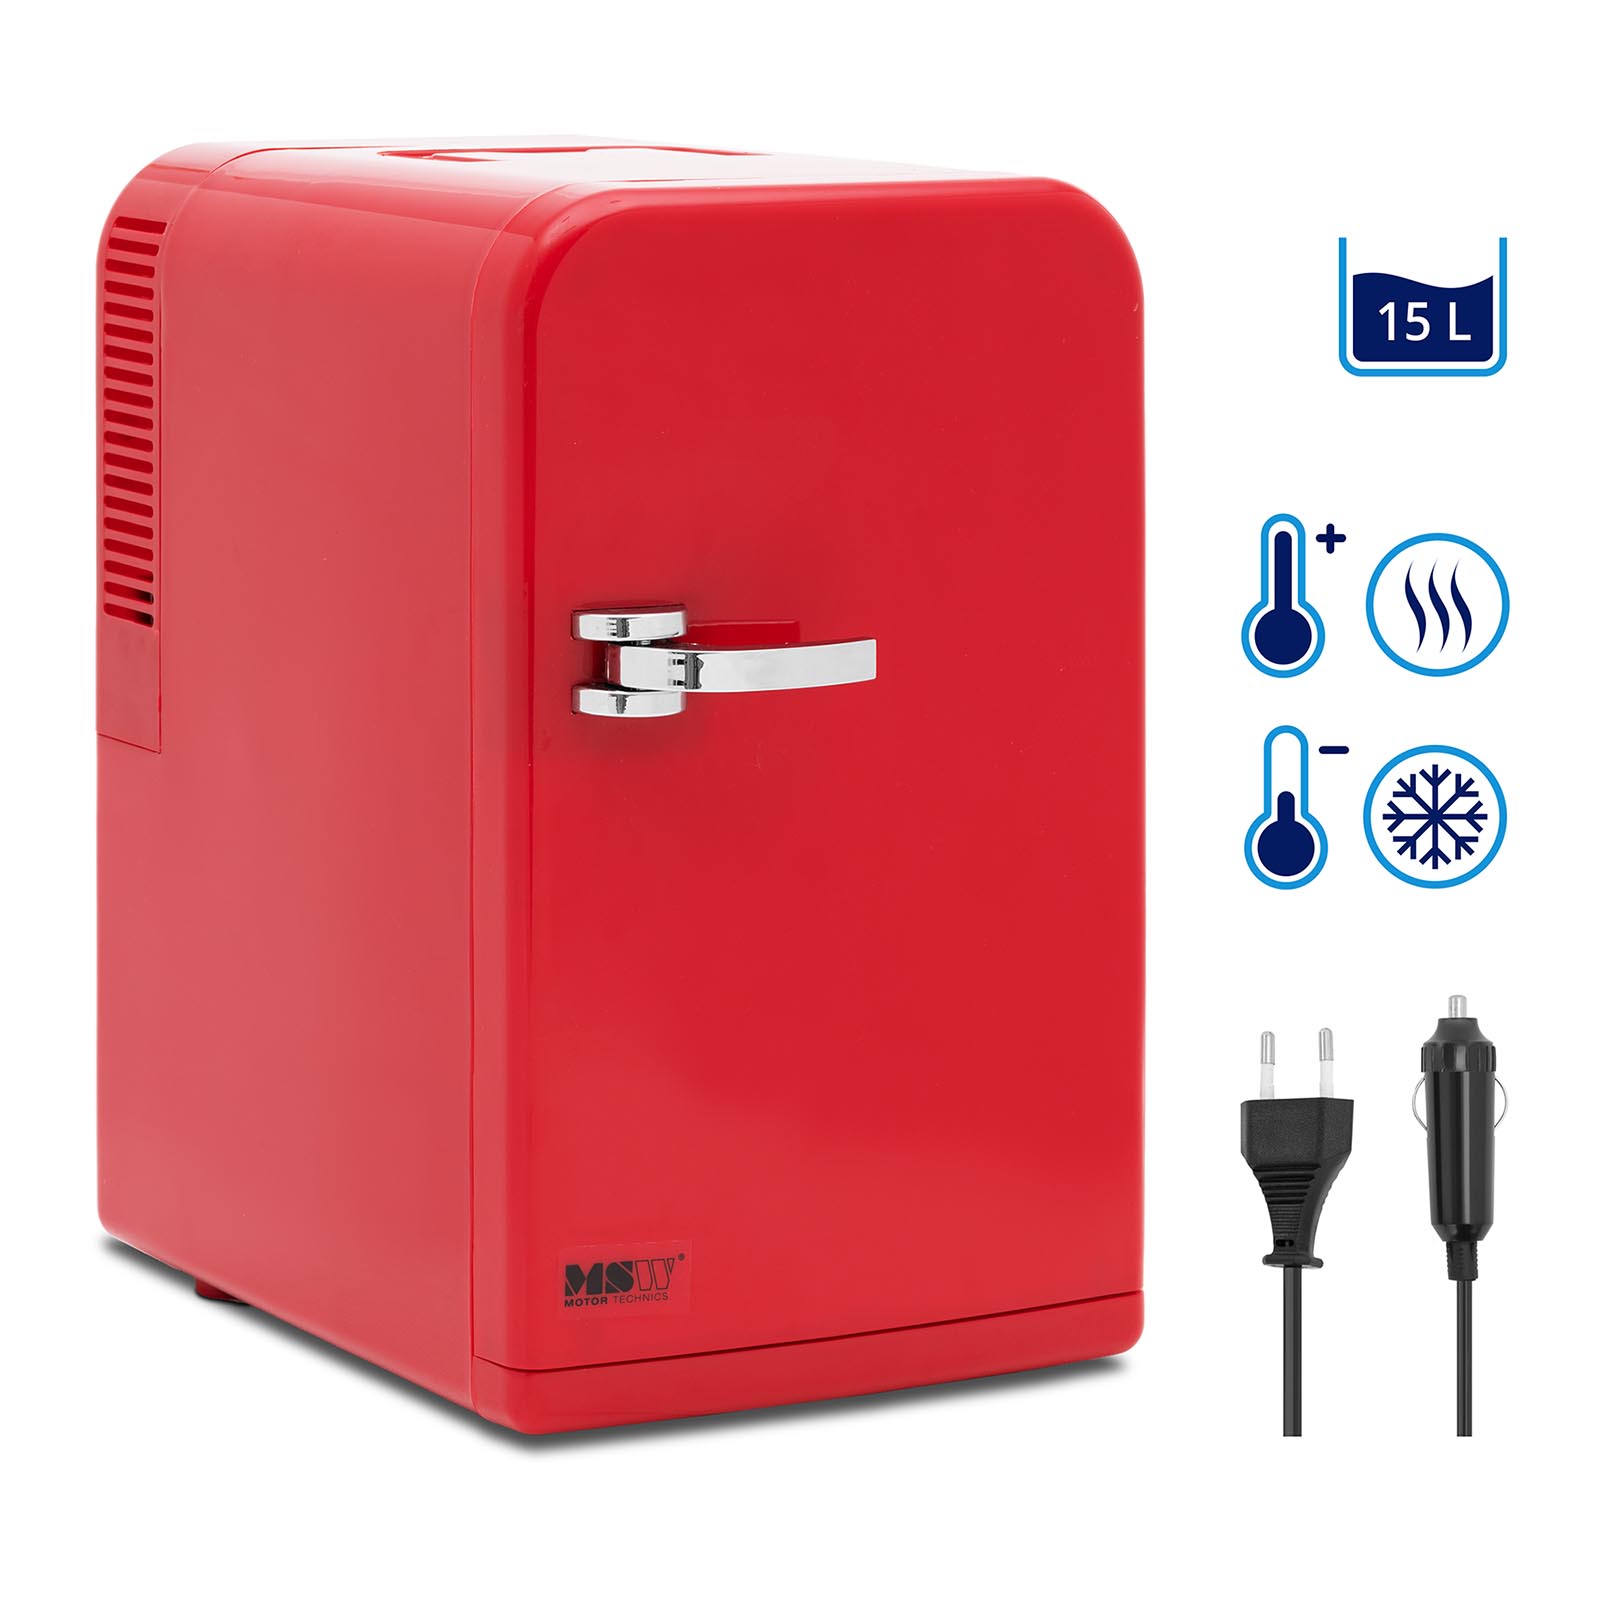 Mini-Kühlschrank 12 V / 230 V - 2-in-1-Gerät mit Warmhaltefunktion - 15 L - Rot